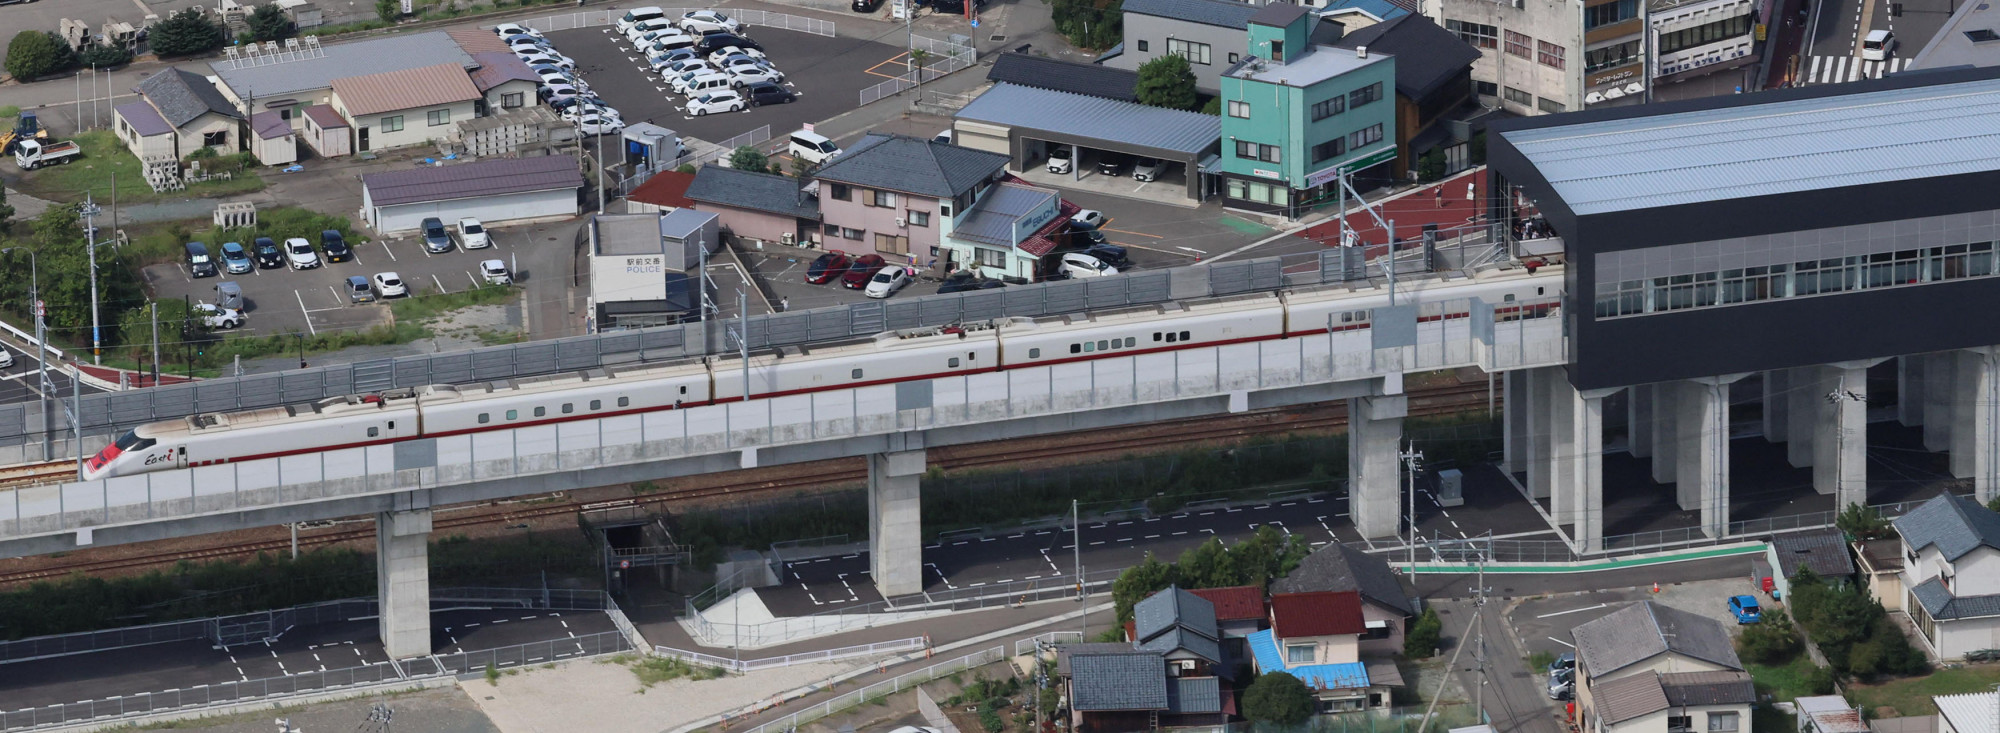 Vegyianyag szivárgott egy japán szuperexpresszen, több utas is égési sérüléseket szenvedett